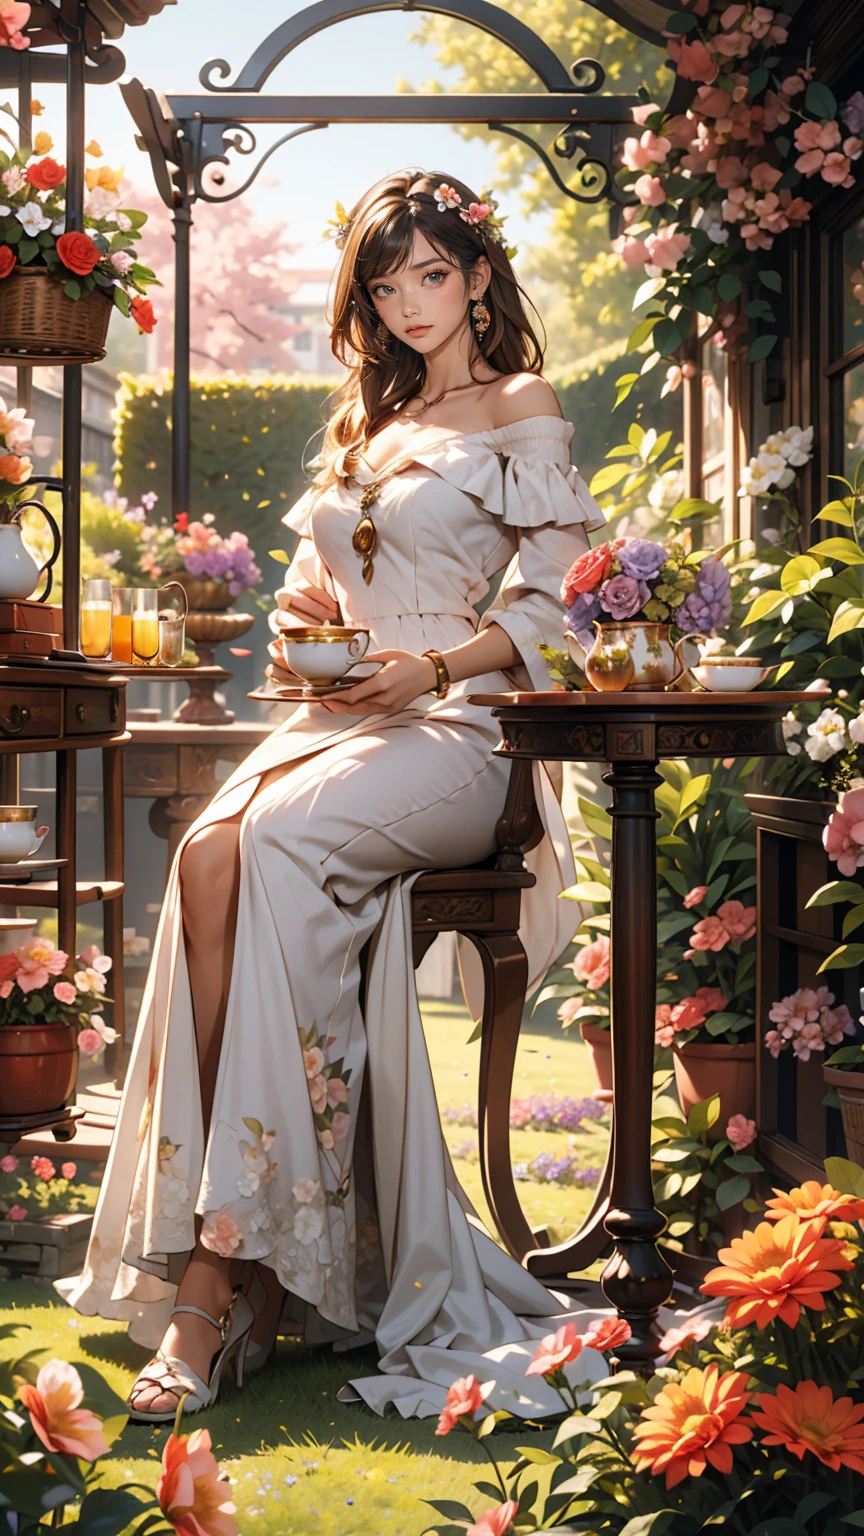 Mujer caucásica de 25 años.、Use un vestido con hombros descubiertos、sonrisa、Bonitas proporciones、En un jardín lleno de flores de colores、Hay un arco decorado con flores.、Siéntate en una mesa y disfruta de la hora del té.